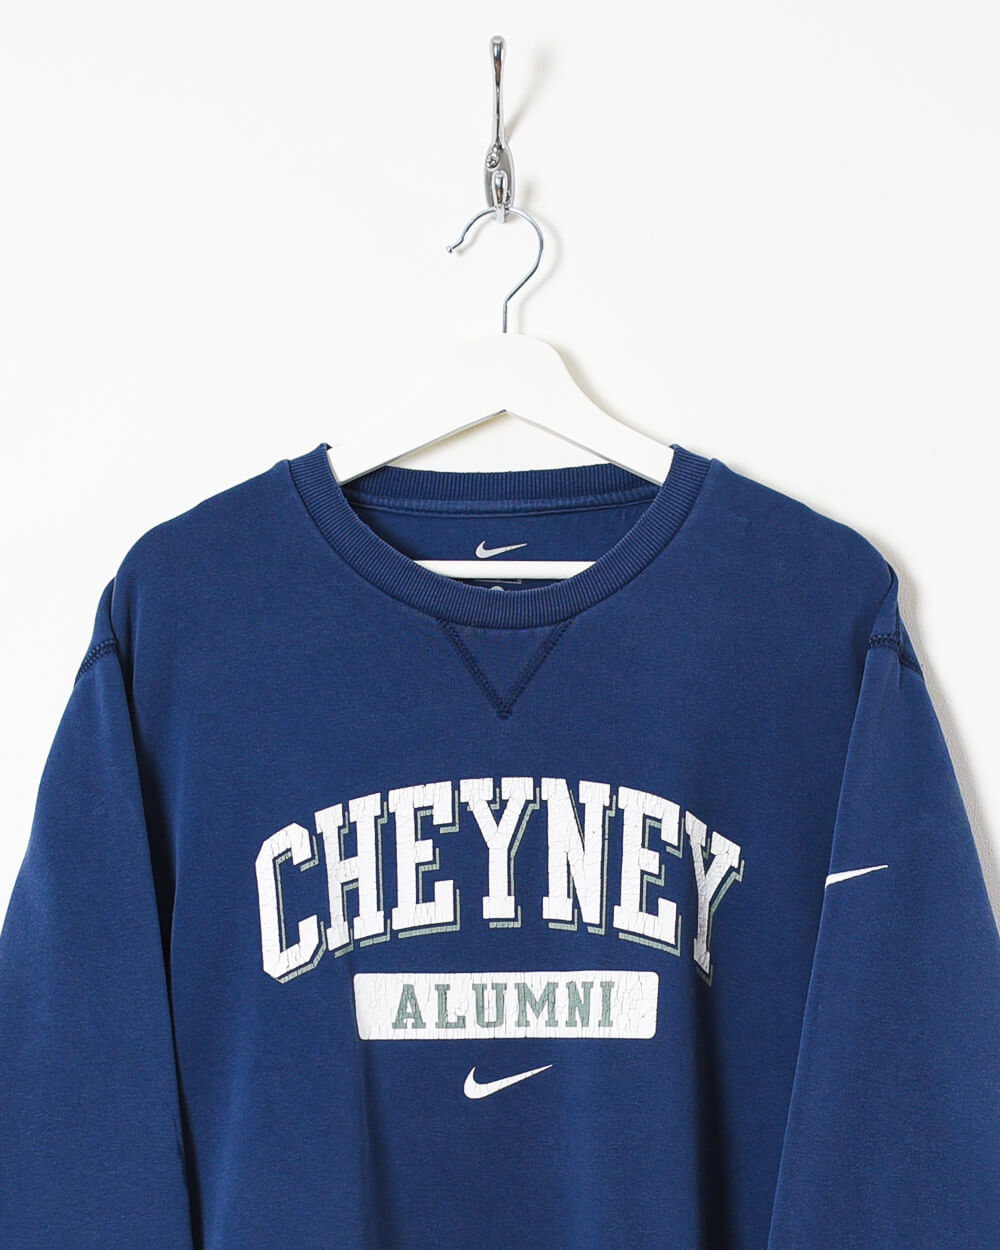 Navy Nike Cheyney Alumni Sweatshirt - Large